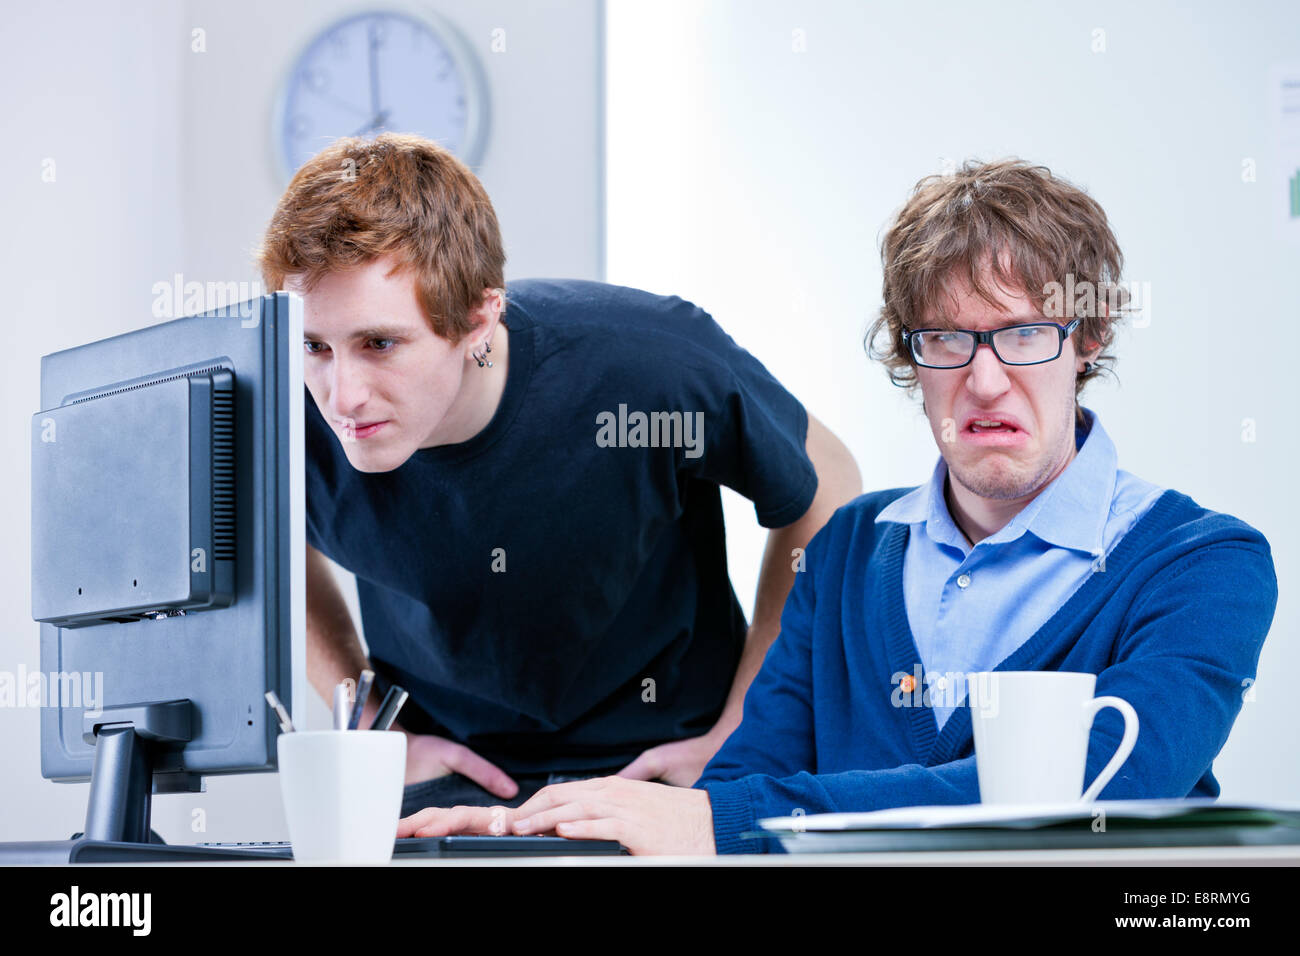 Un trabajador de oficina disgustado mientras el otro busca algo en una pantalla de ordenador Foto de stock